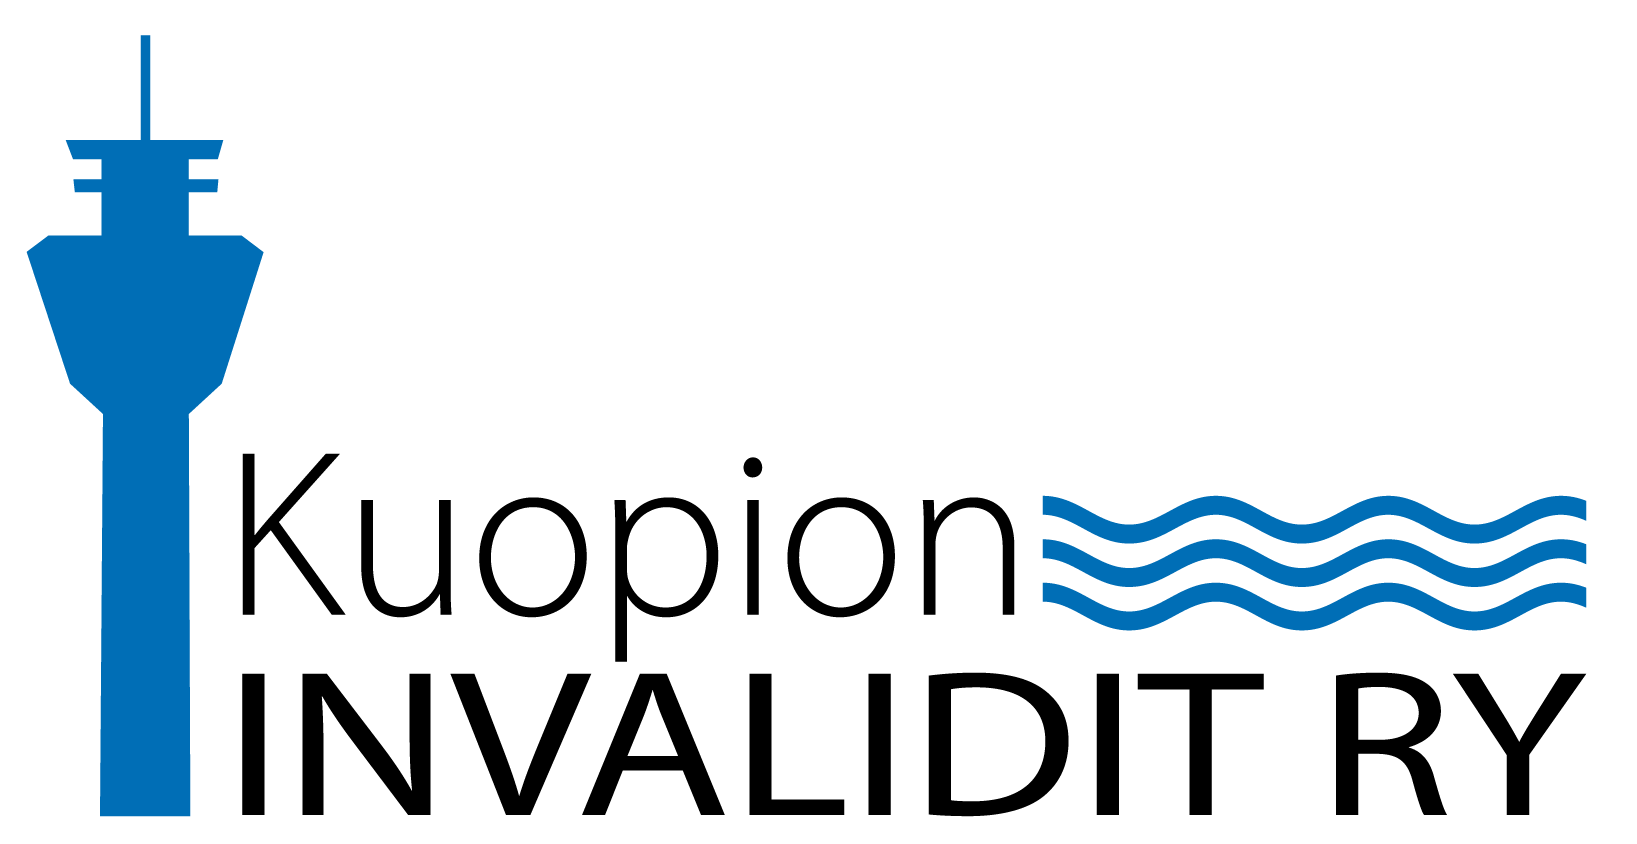 Jrjestn Kuopion Invalidit ry logo